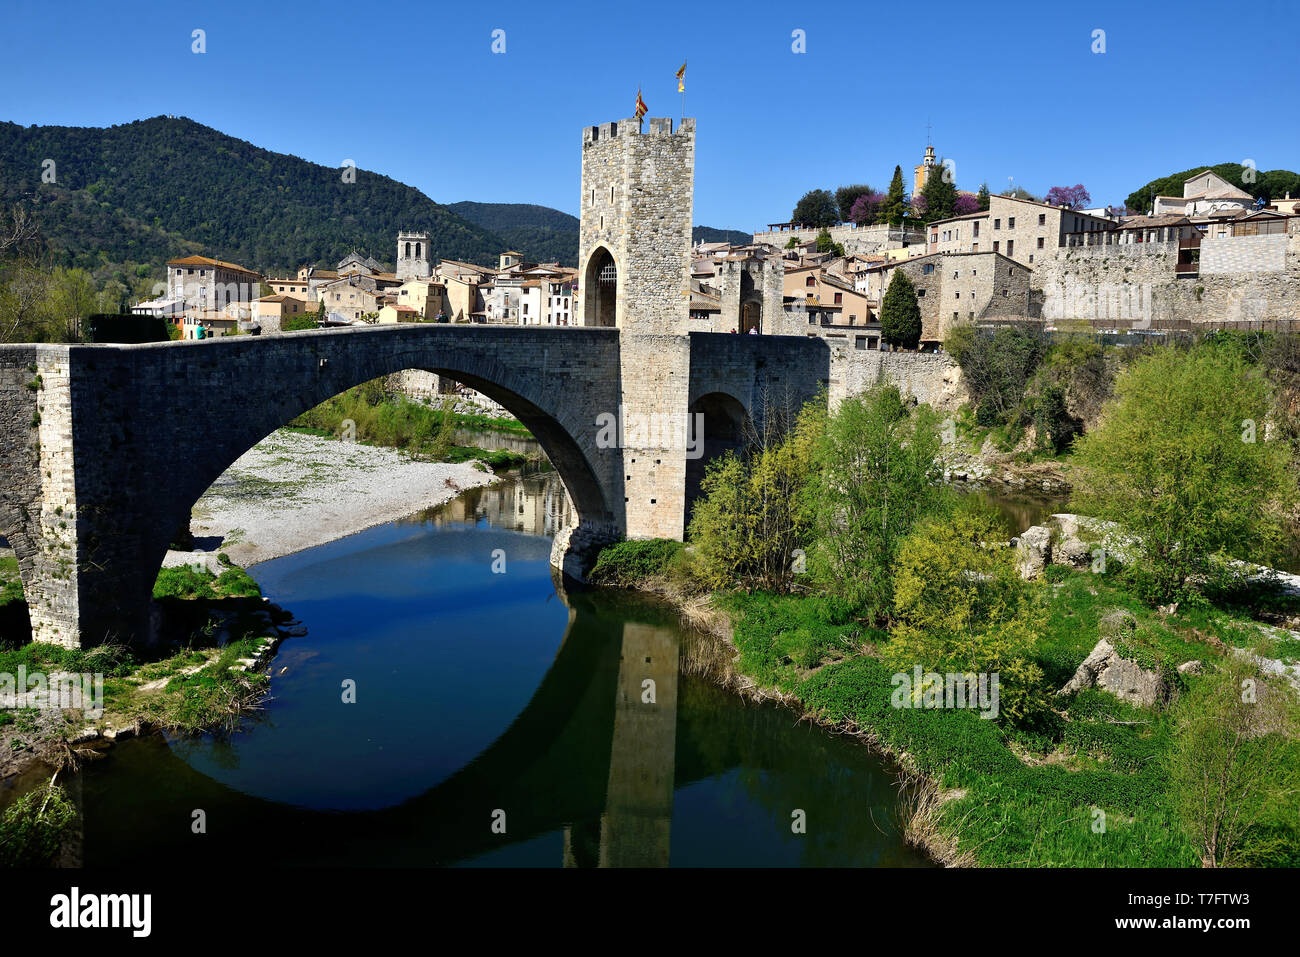 In Spagna, in Catalogna: Romano ponte in pietra che sovrastano il villaggio di Besalu Foto Stock